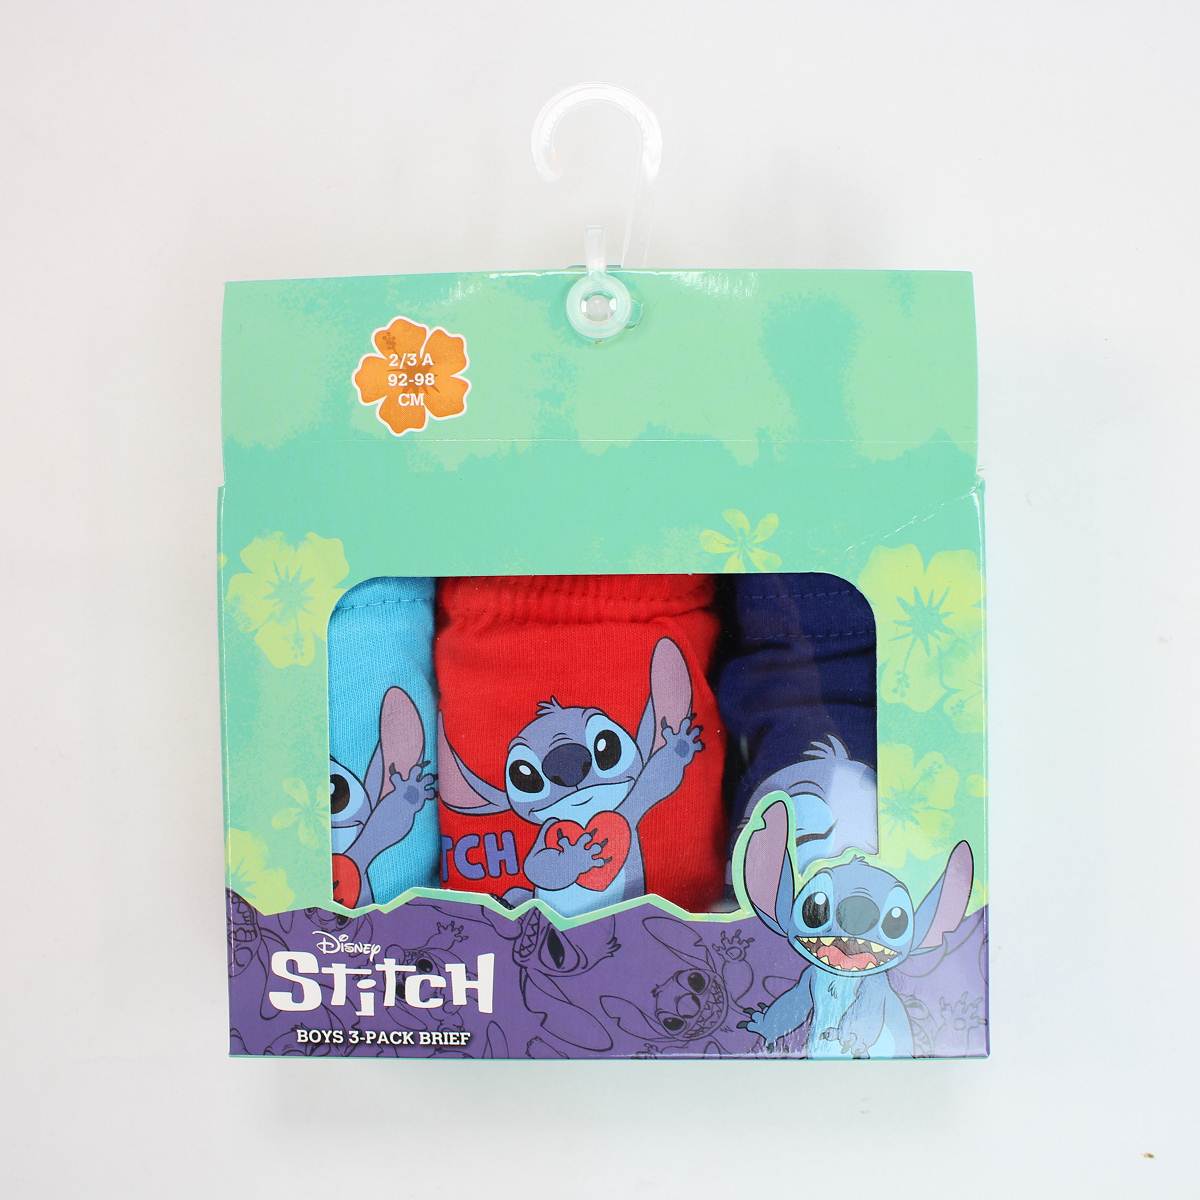 Pack of 5 Lilo & Stitch ©Disney briefs - Underwear - ACCESSORIES